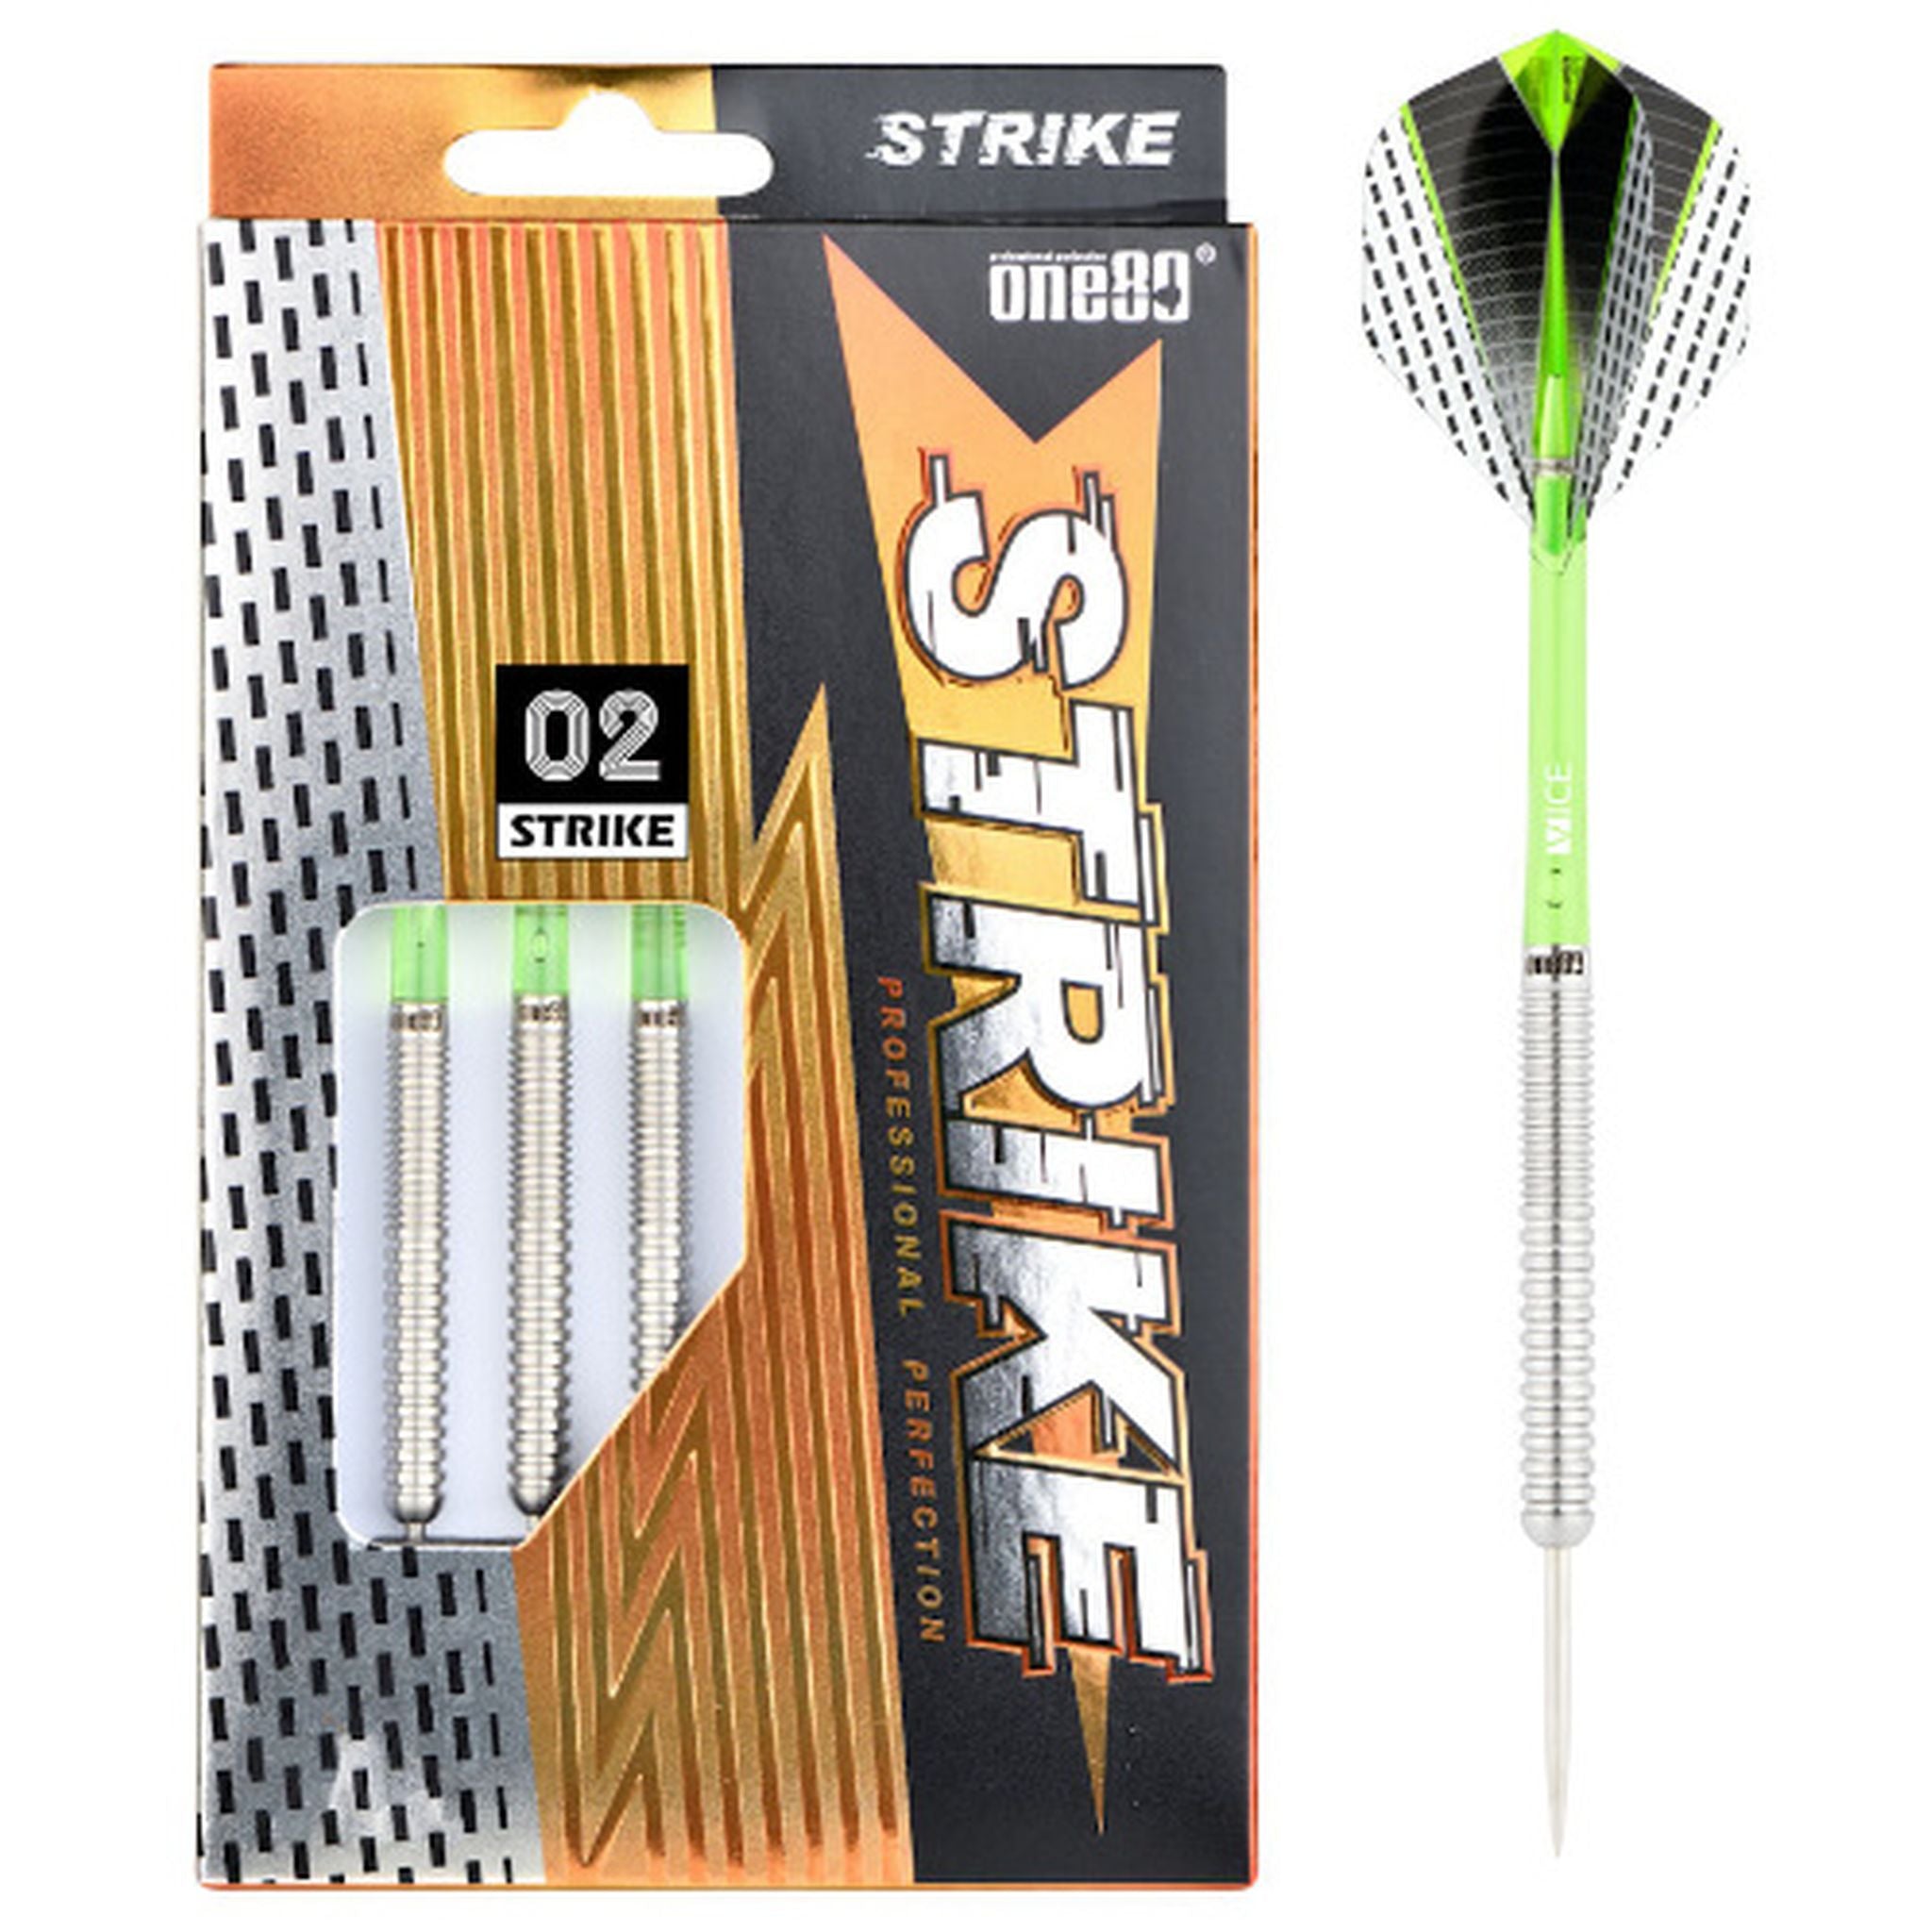 ONE80 Strike 80% Tungsten Darts - Green (02)